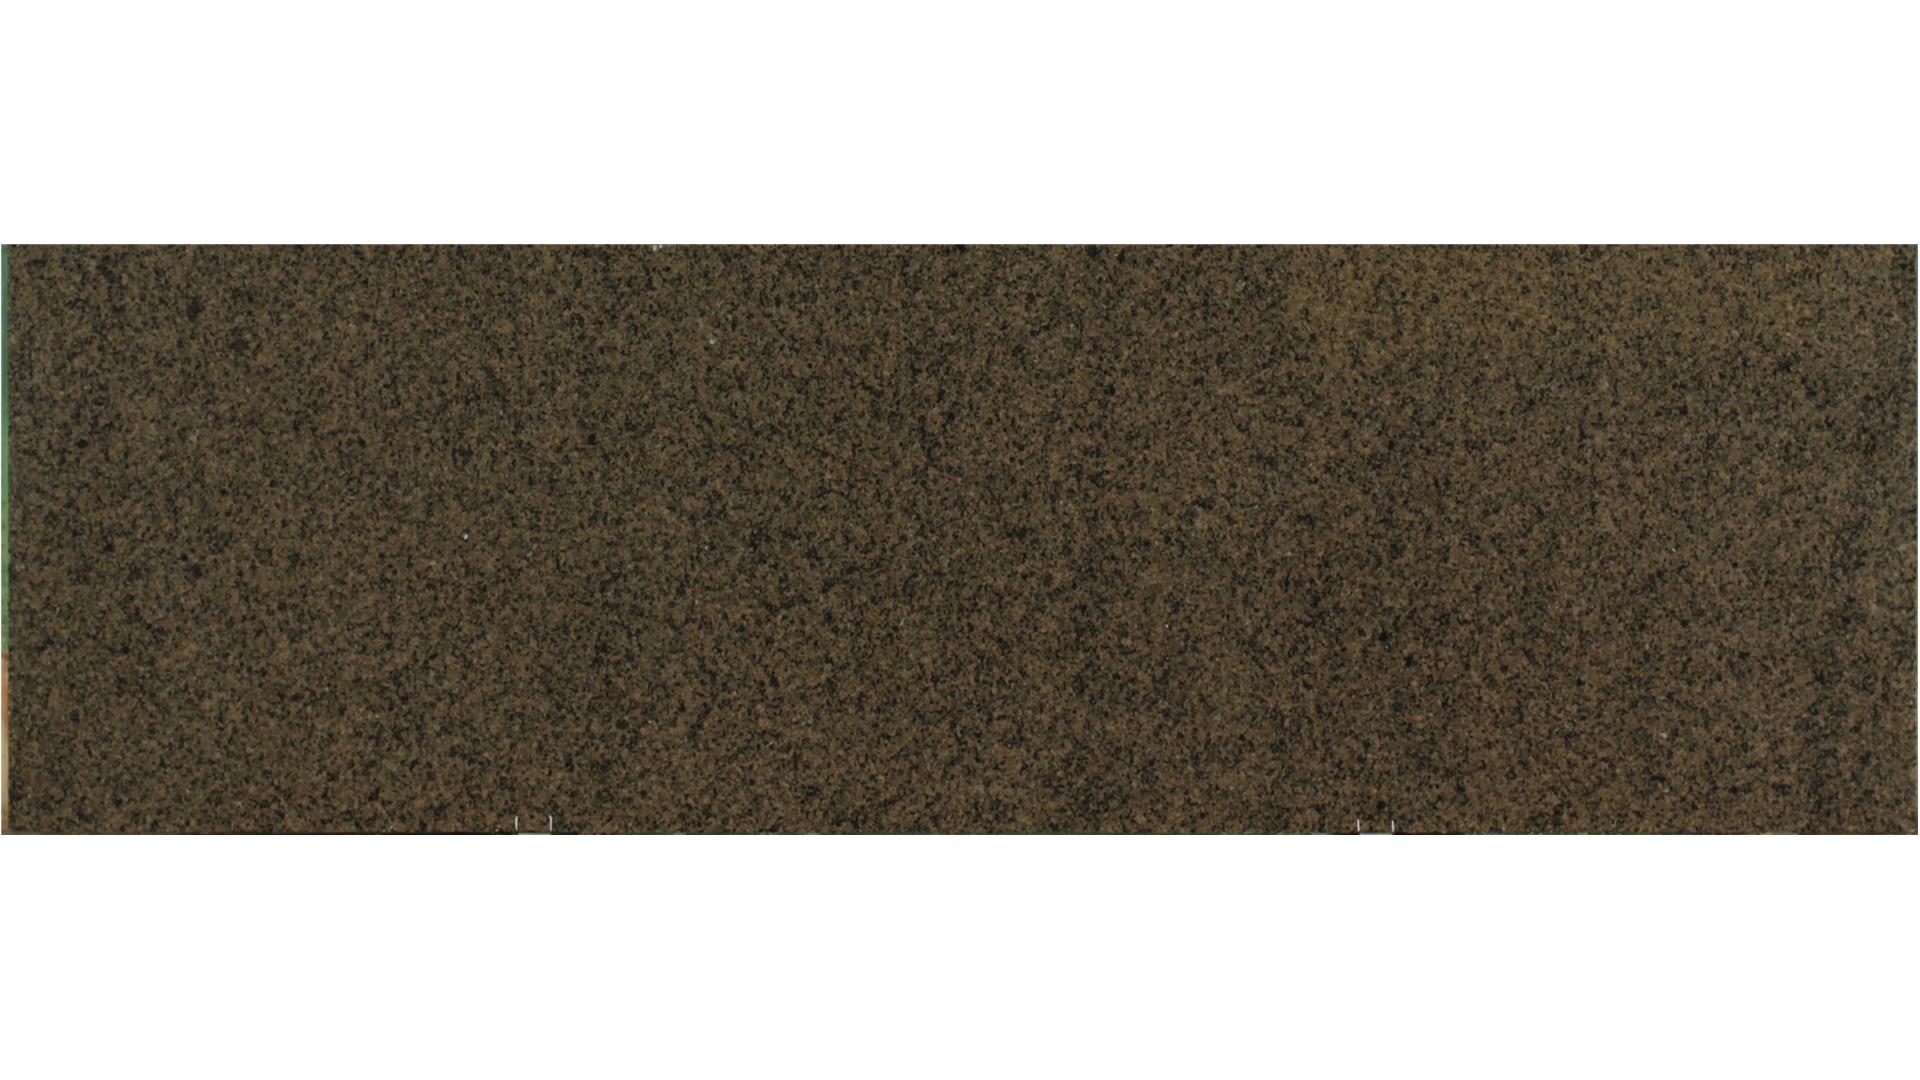 Tropic Brown 3 cm Granite Slabs